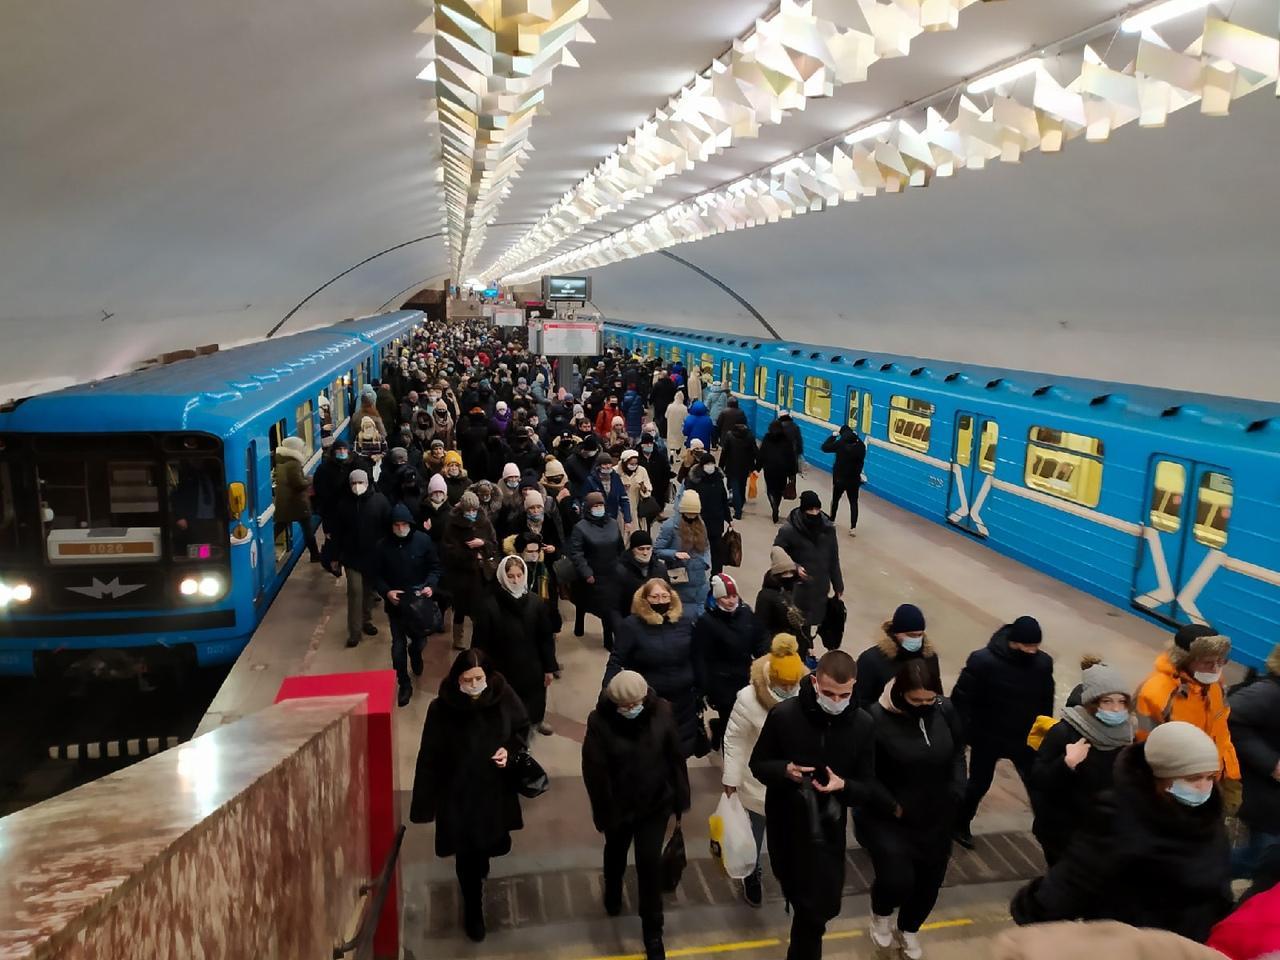 Фото Топливный кризис, блокировки Роскомнадзора, смертная казнь и новые станции метро: главные новости 17 марта 2021 года – в одном материале 5